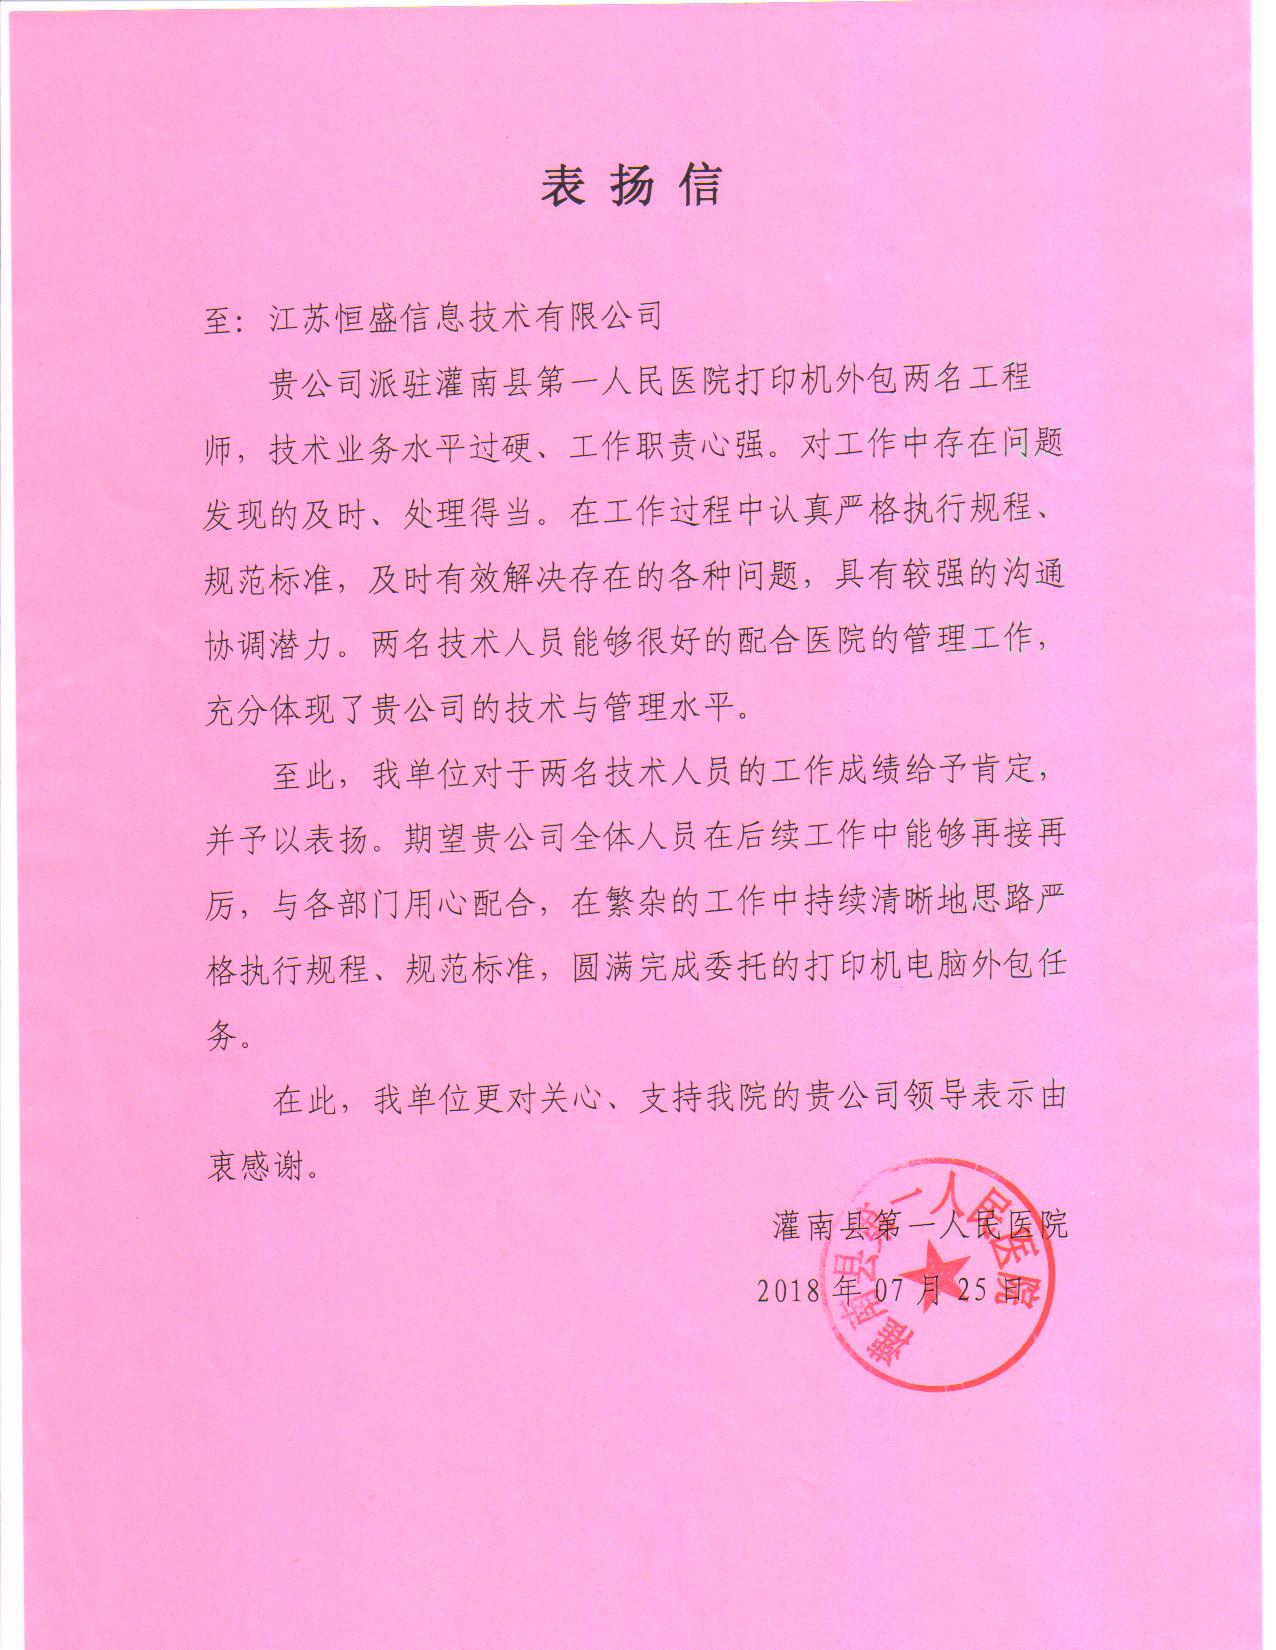 灌南县第一人民医院表扬信